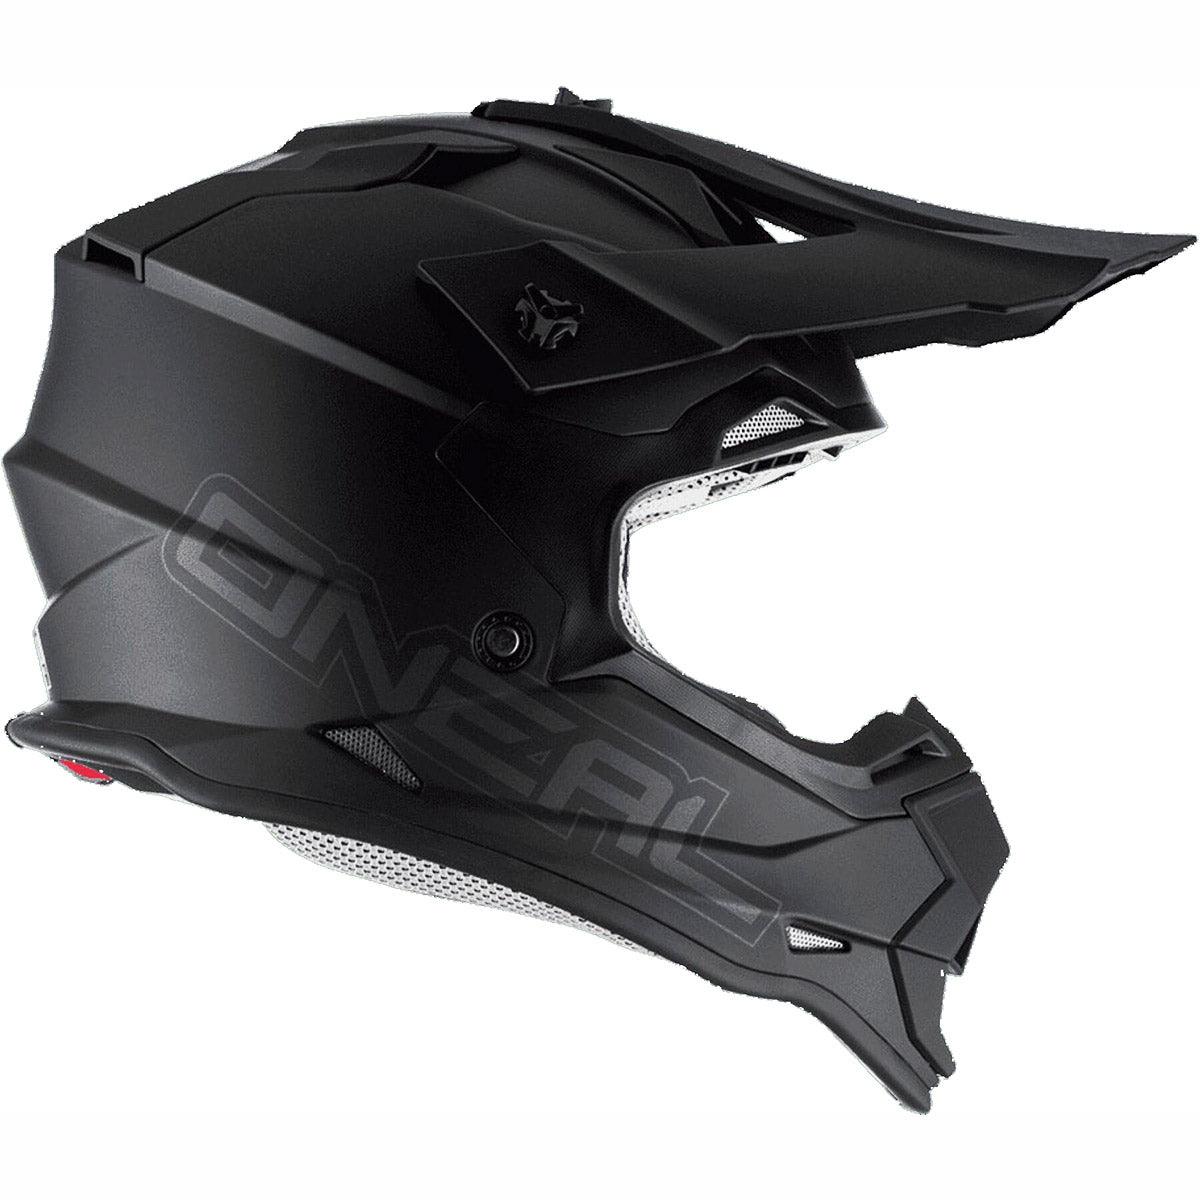 ONeal 2SRS Helmet Flat - Black - The Motocrosshut